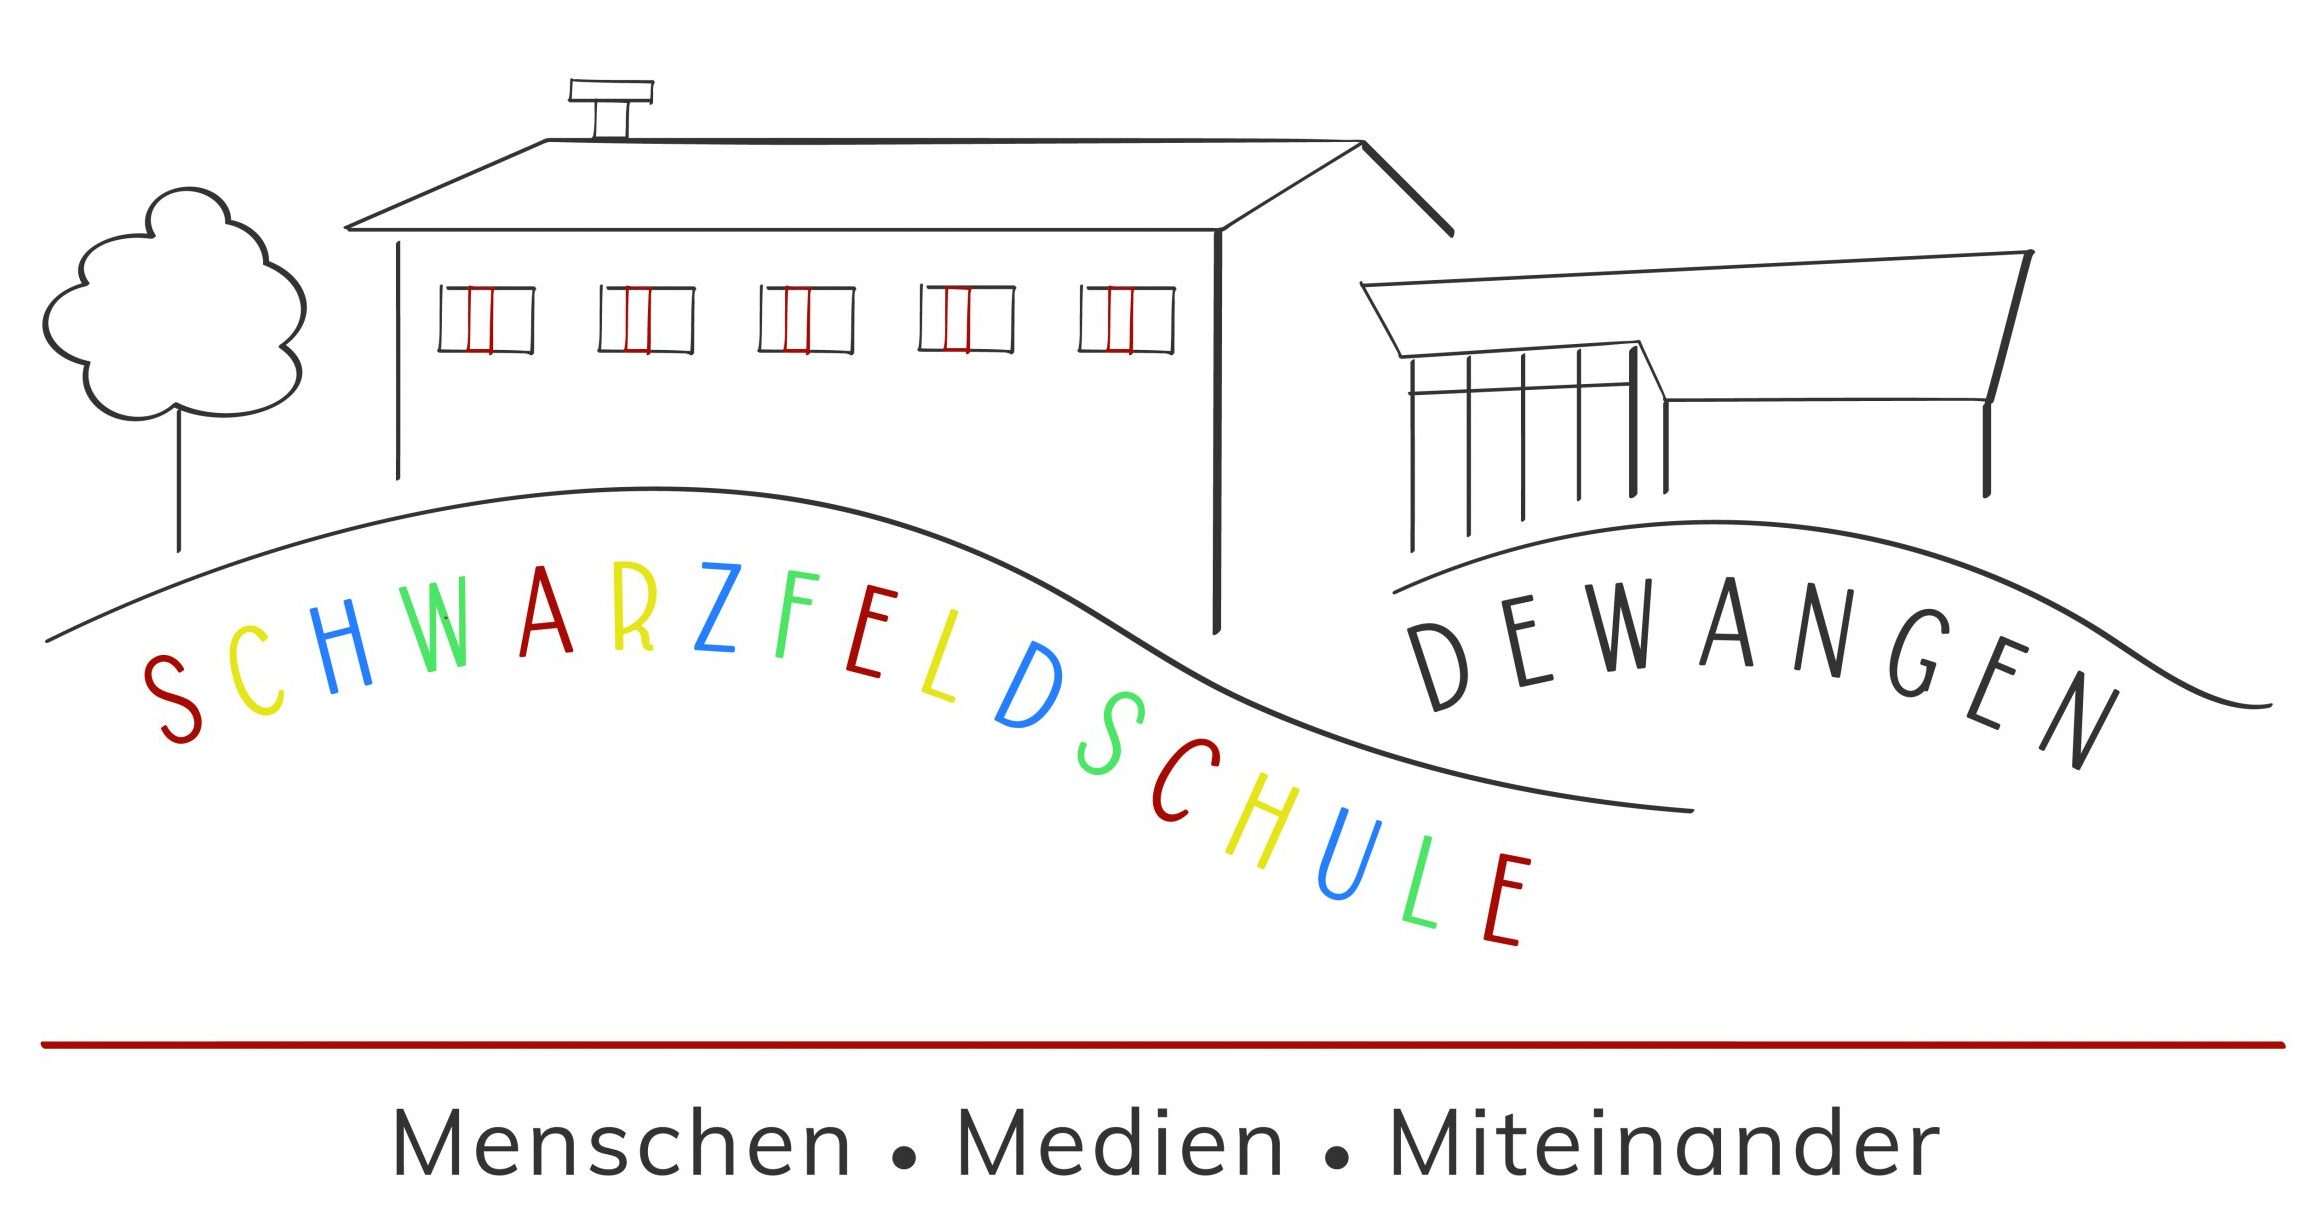 Schwarzfeldschule Dewangen